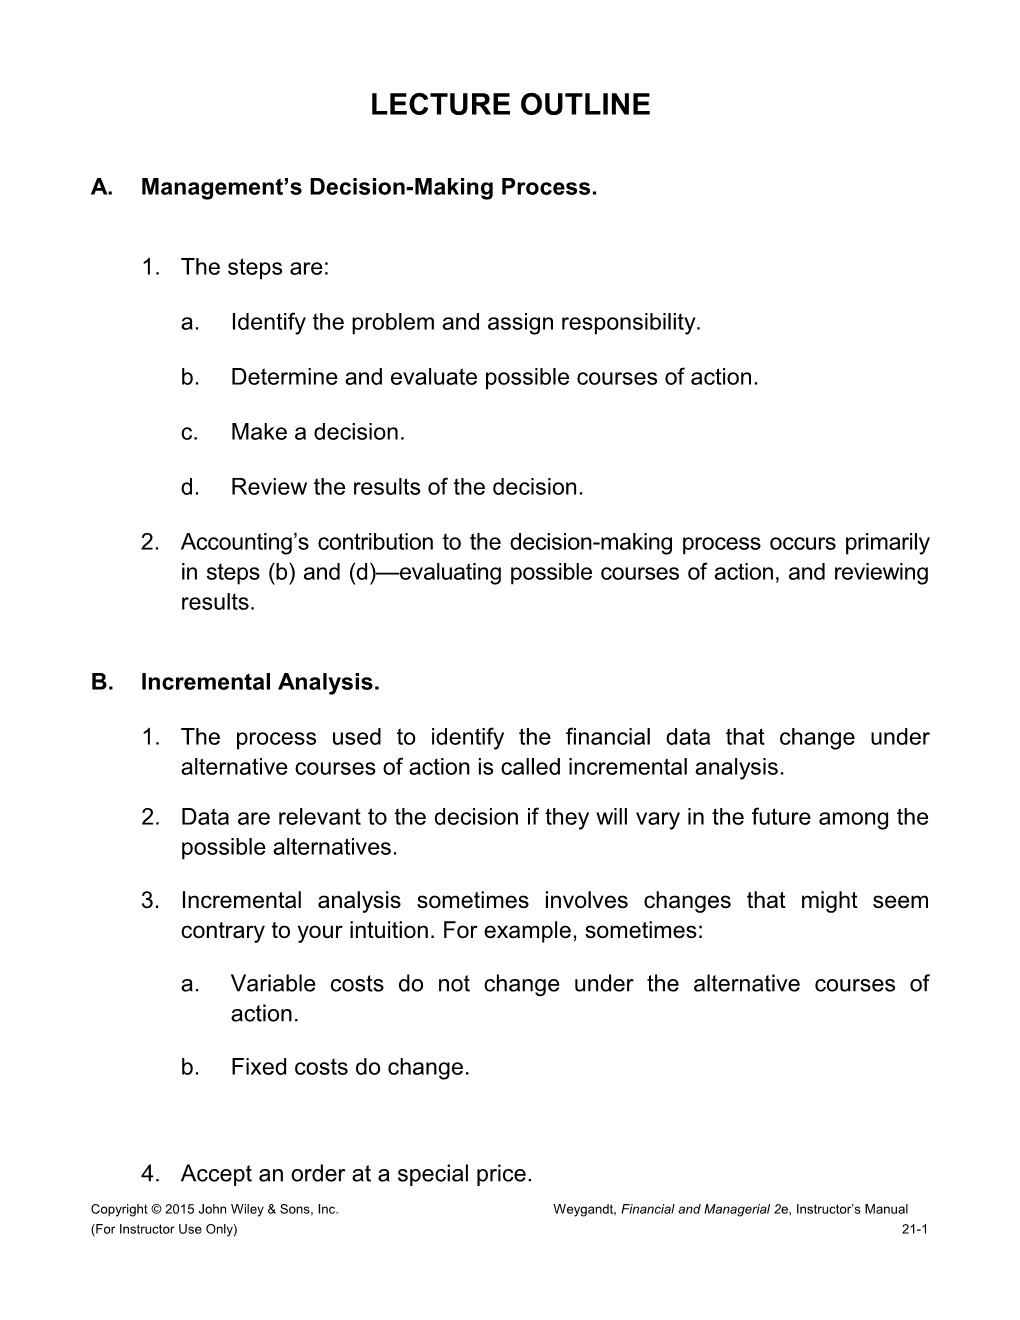 A.Management S Decision-Making Process